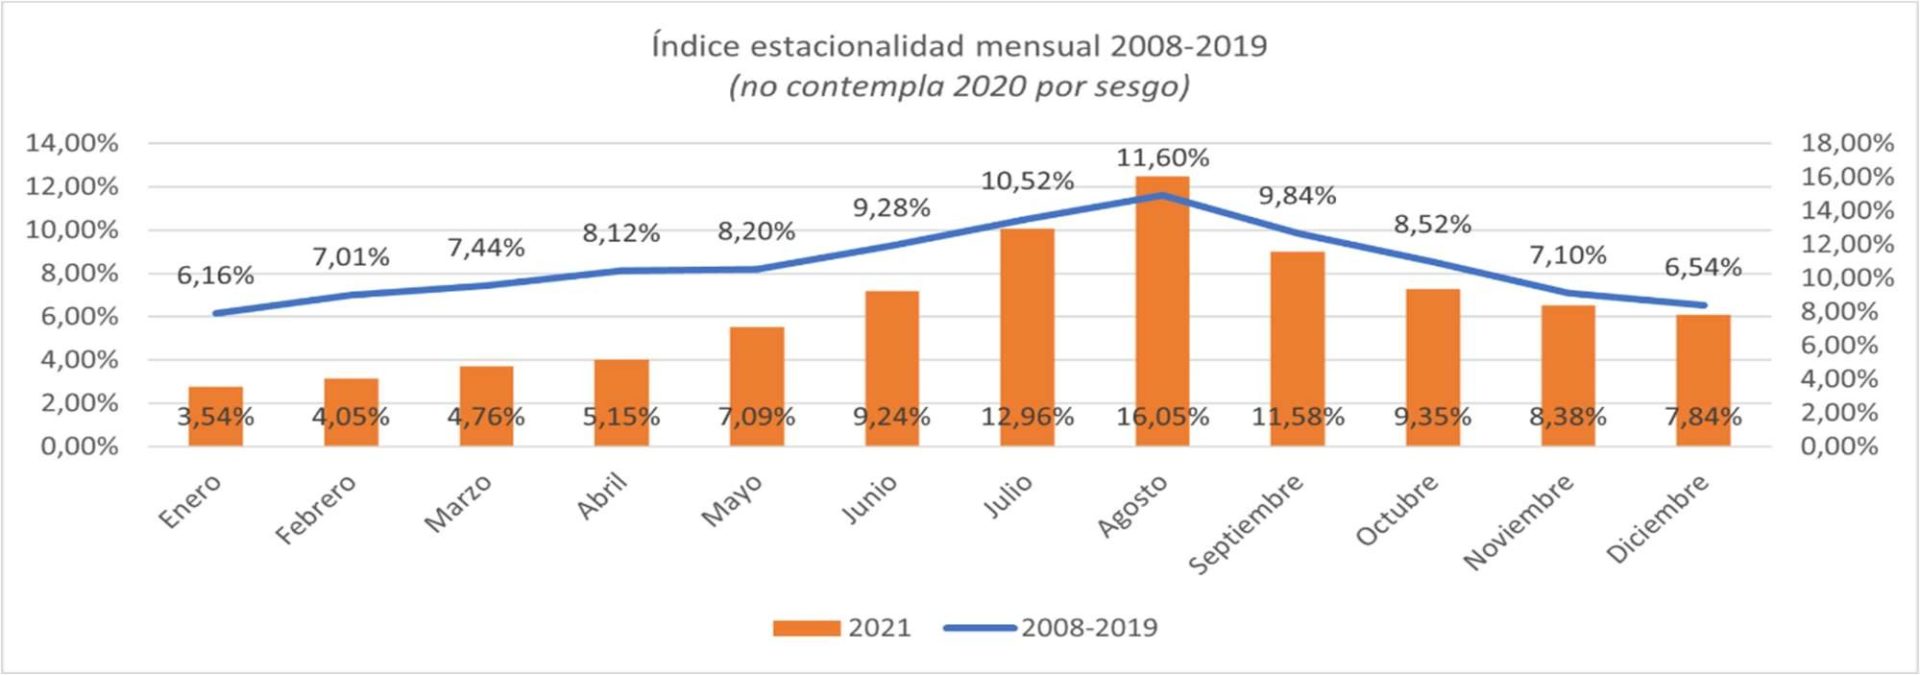 índice de estacionalidad mensual 2008-2019